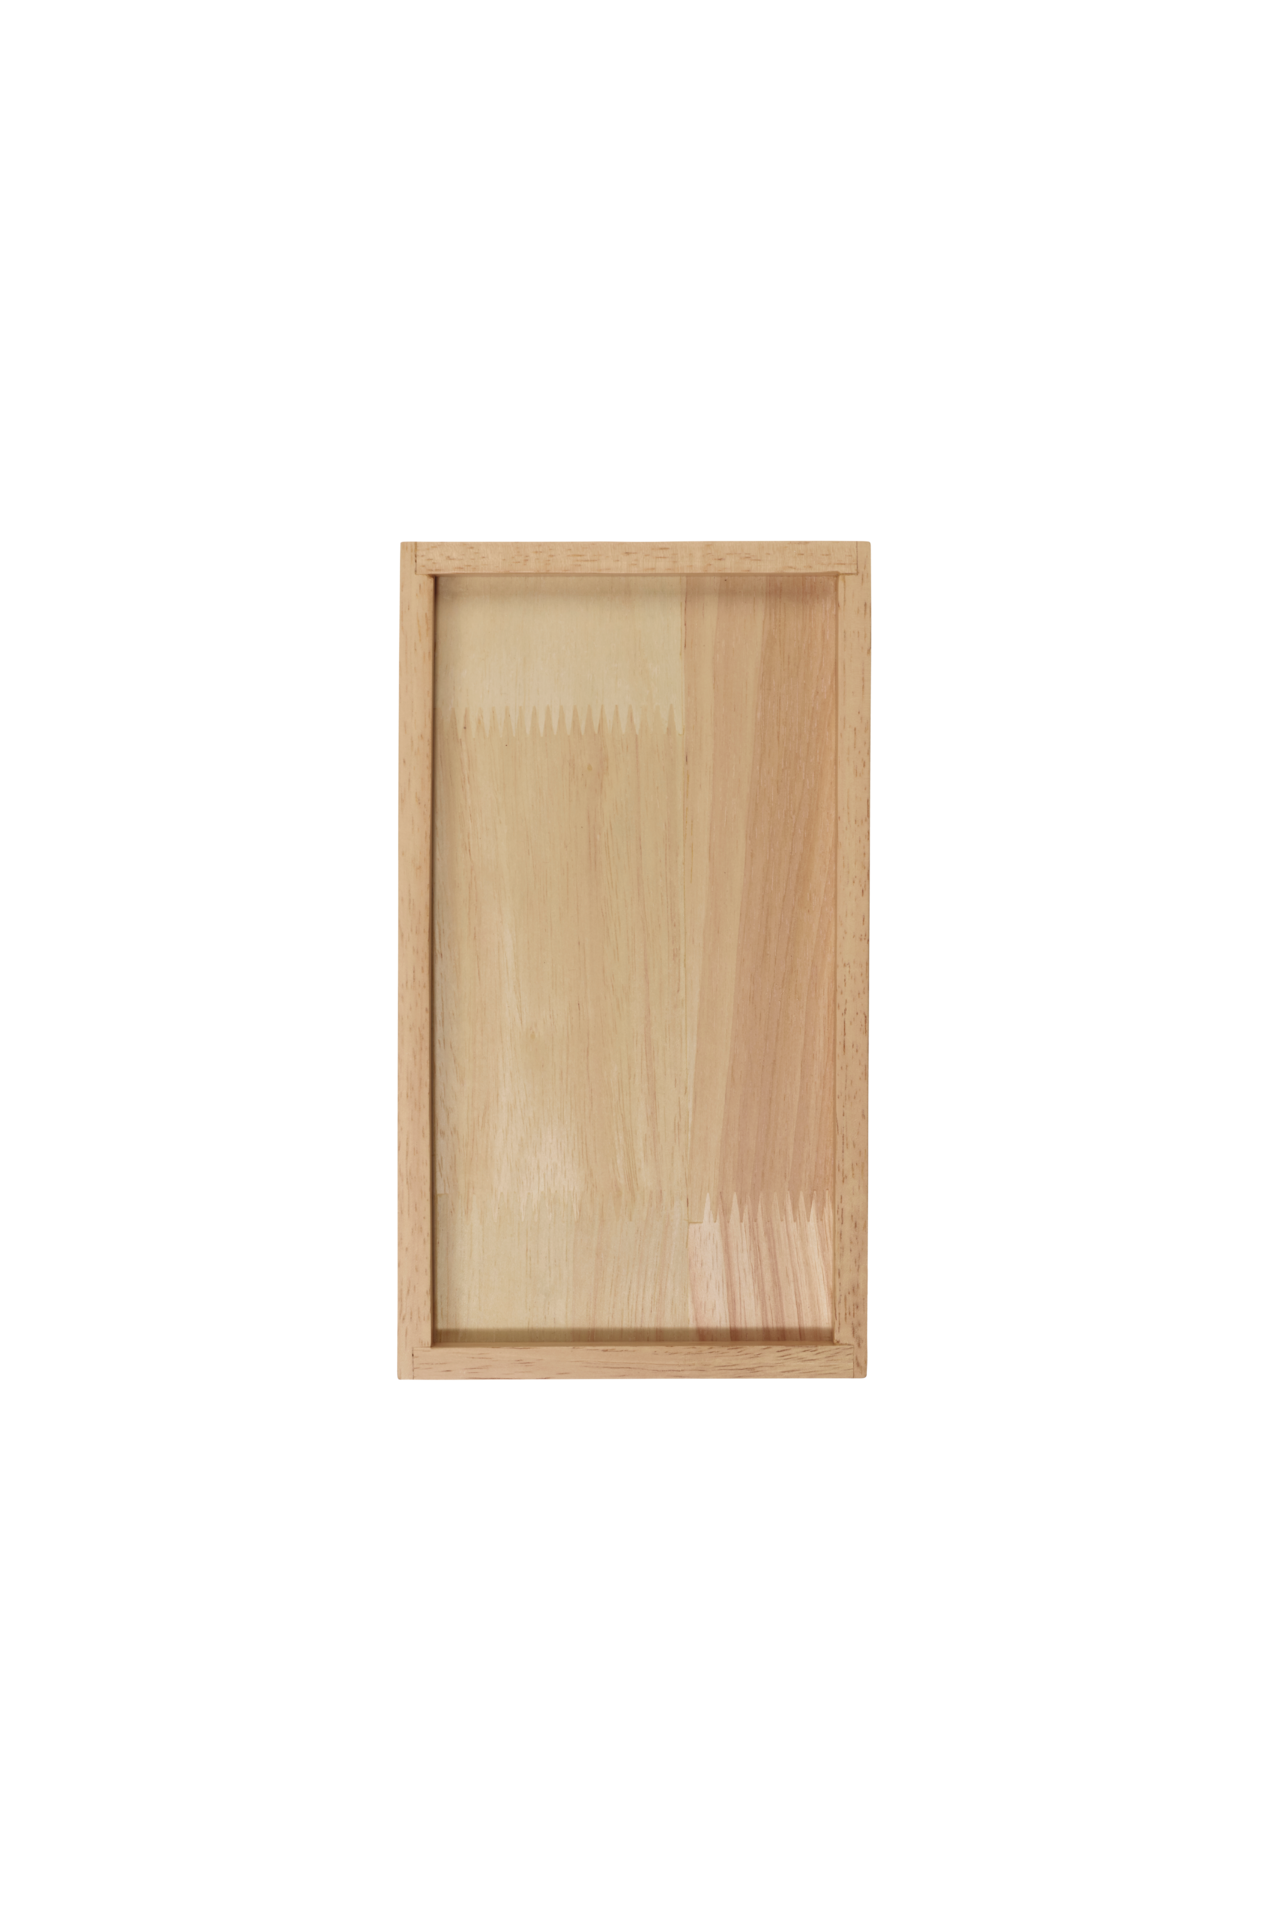 ASA Holztablett rechteckig, natur 25 x14 cm, H. 2 cm wood